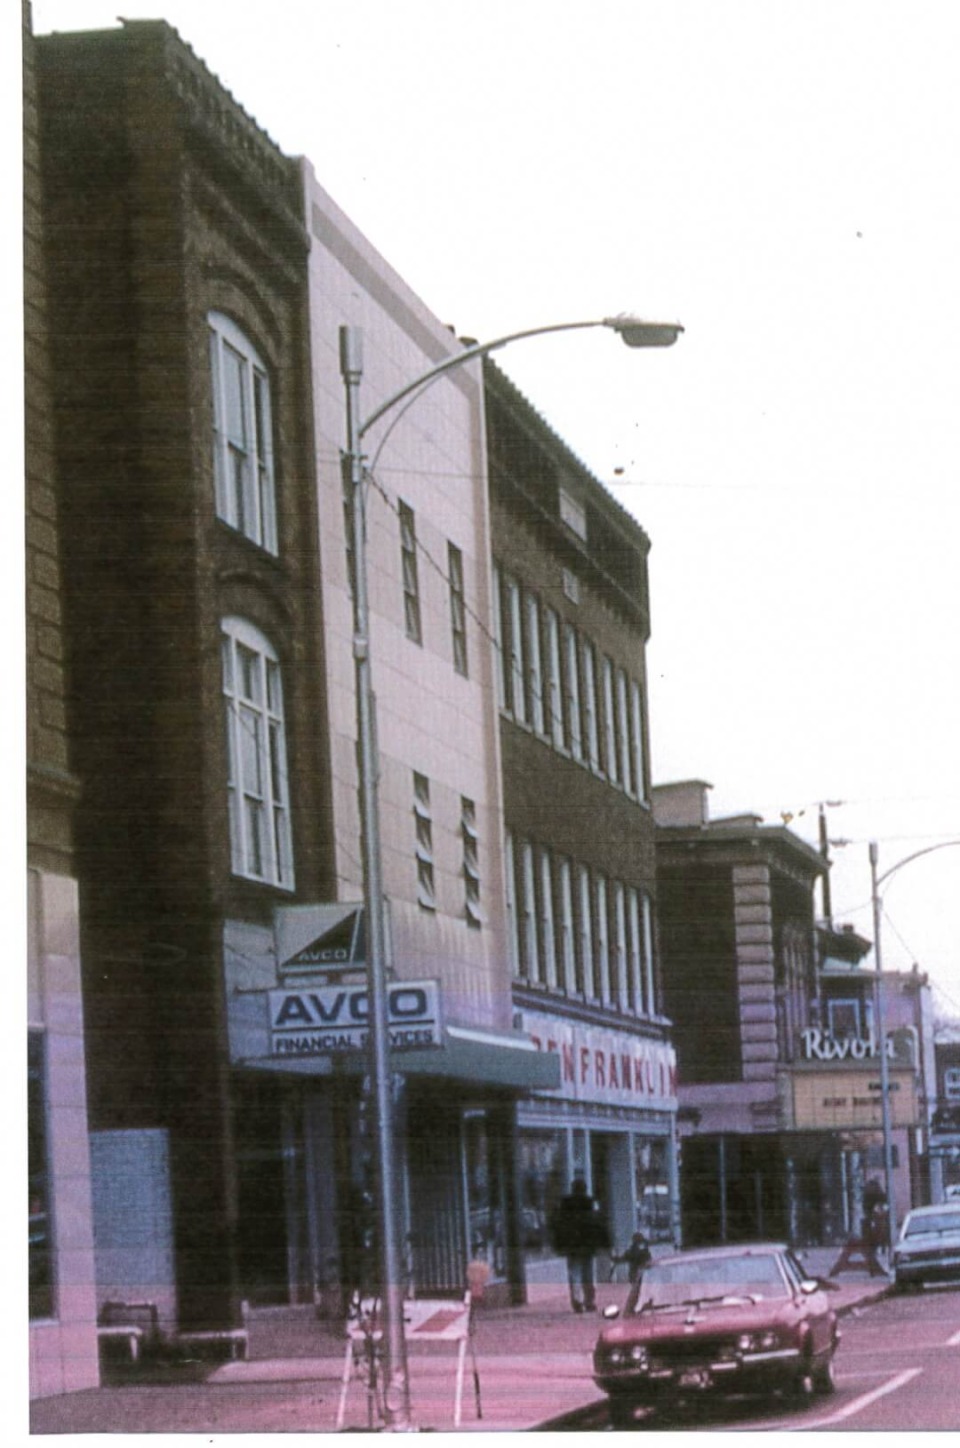 AVCO Financial Services in Oskaloosa, Iowa, in 1980.